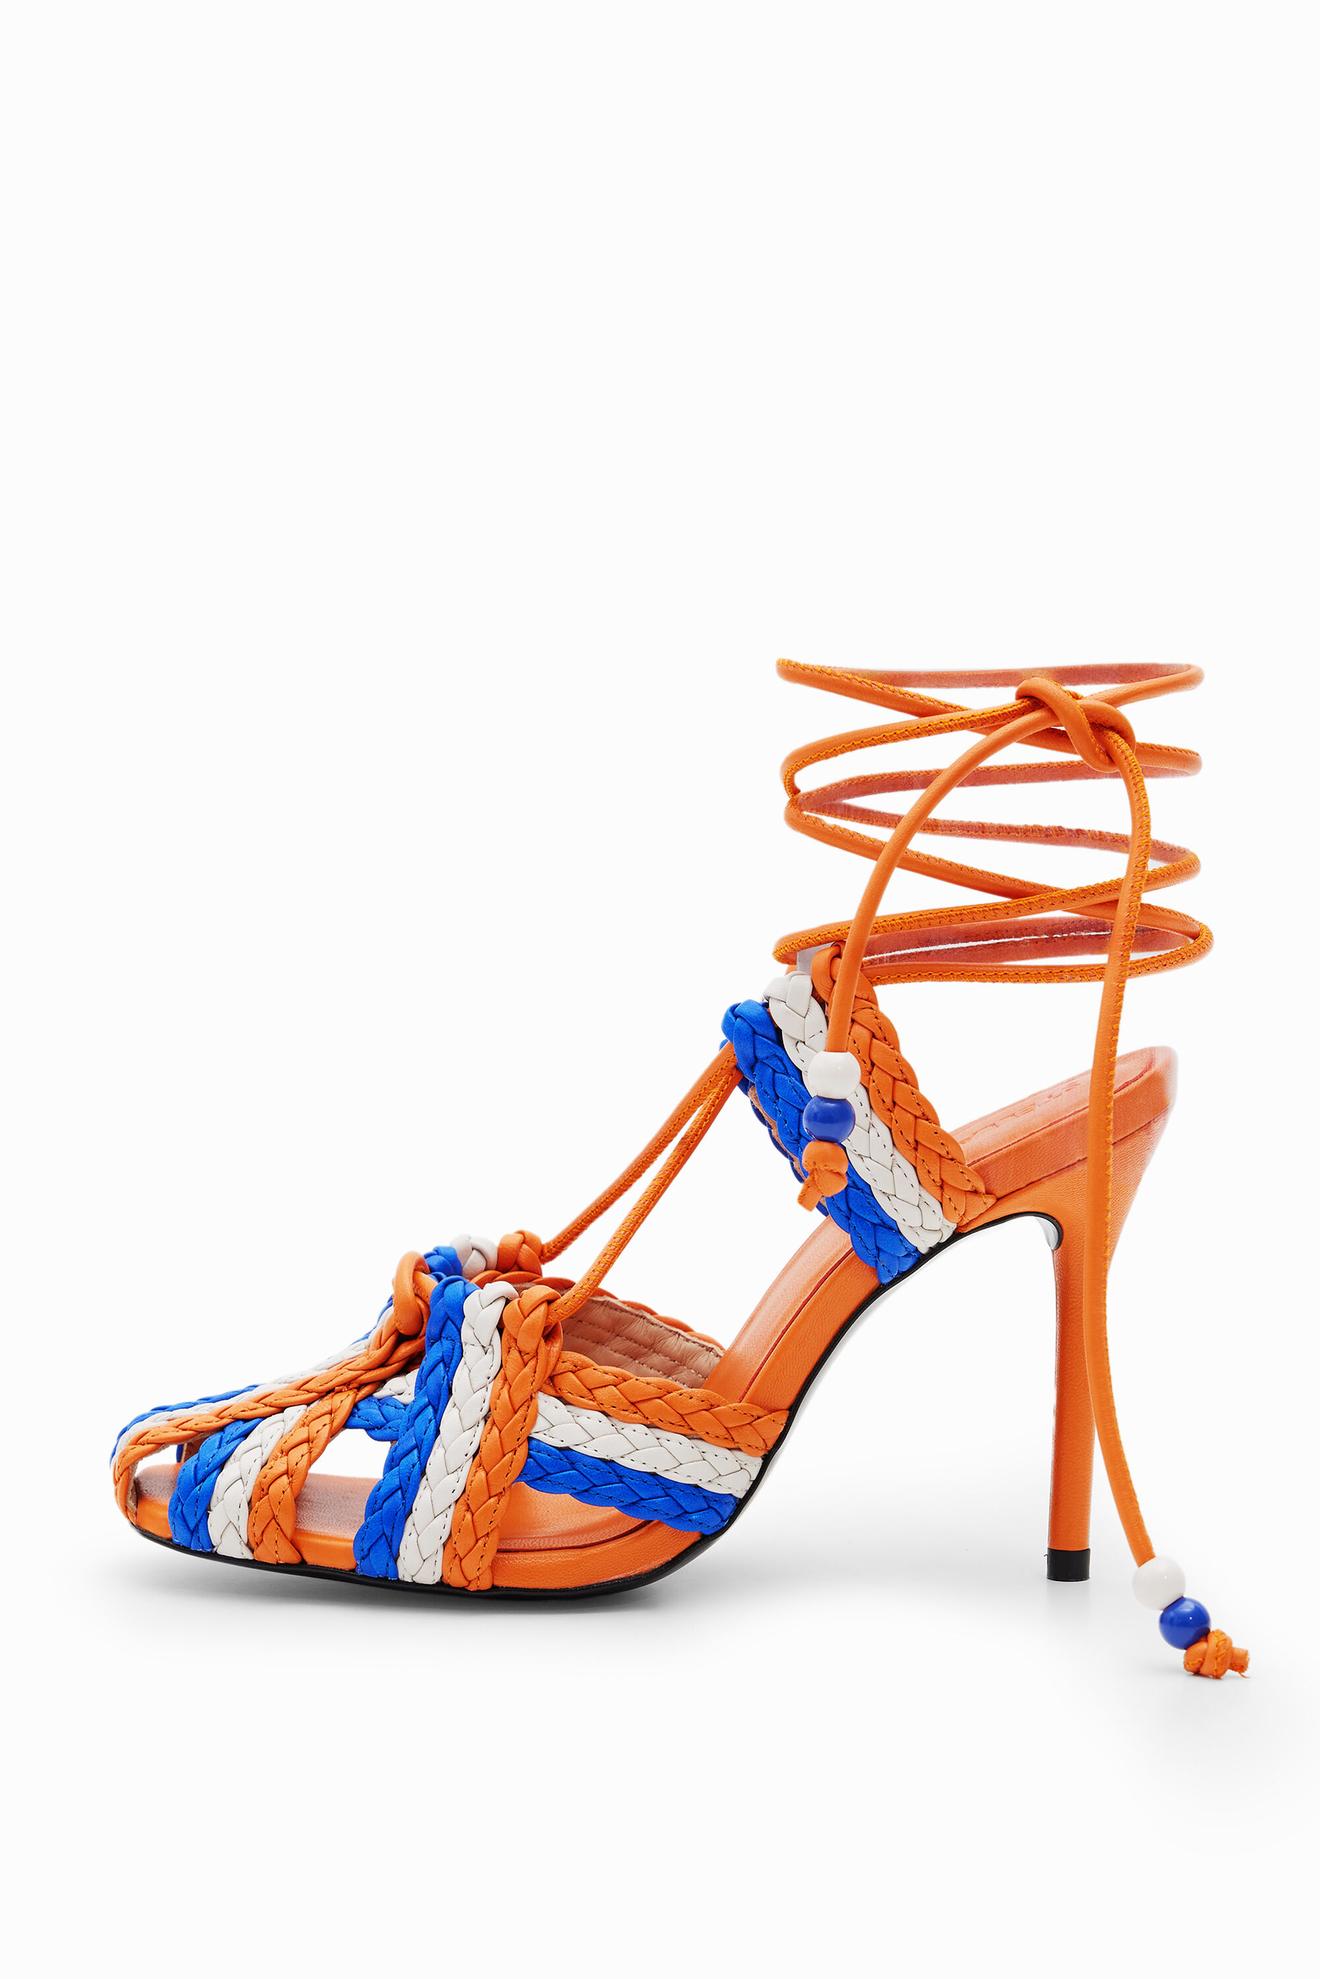 Stella Jean heeled sandal för 3419 kr på Desigual